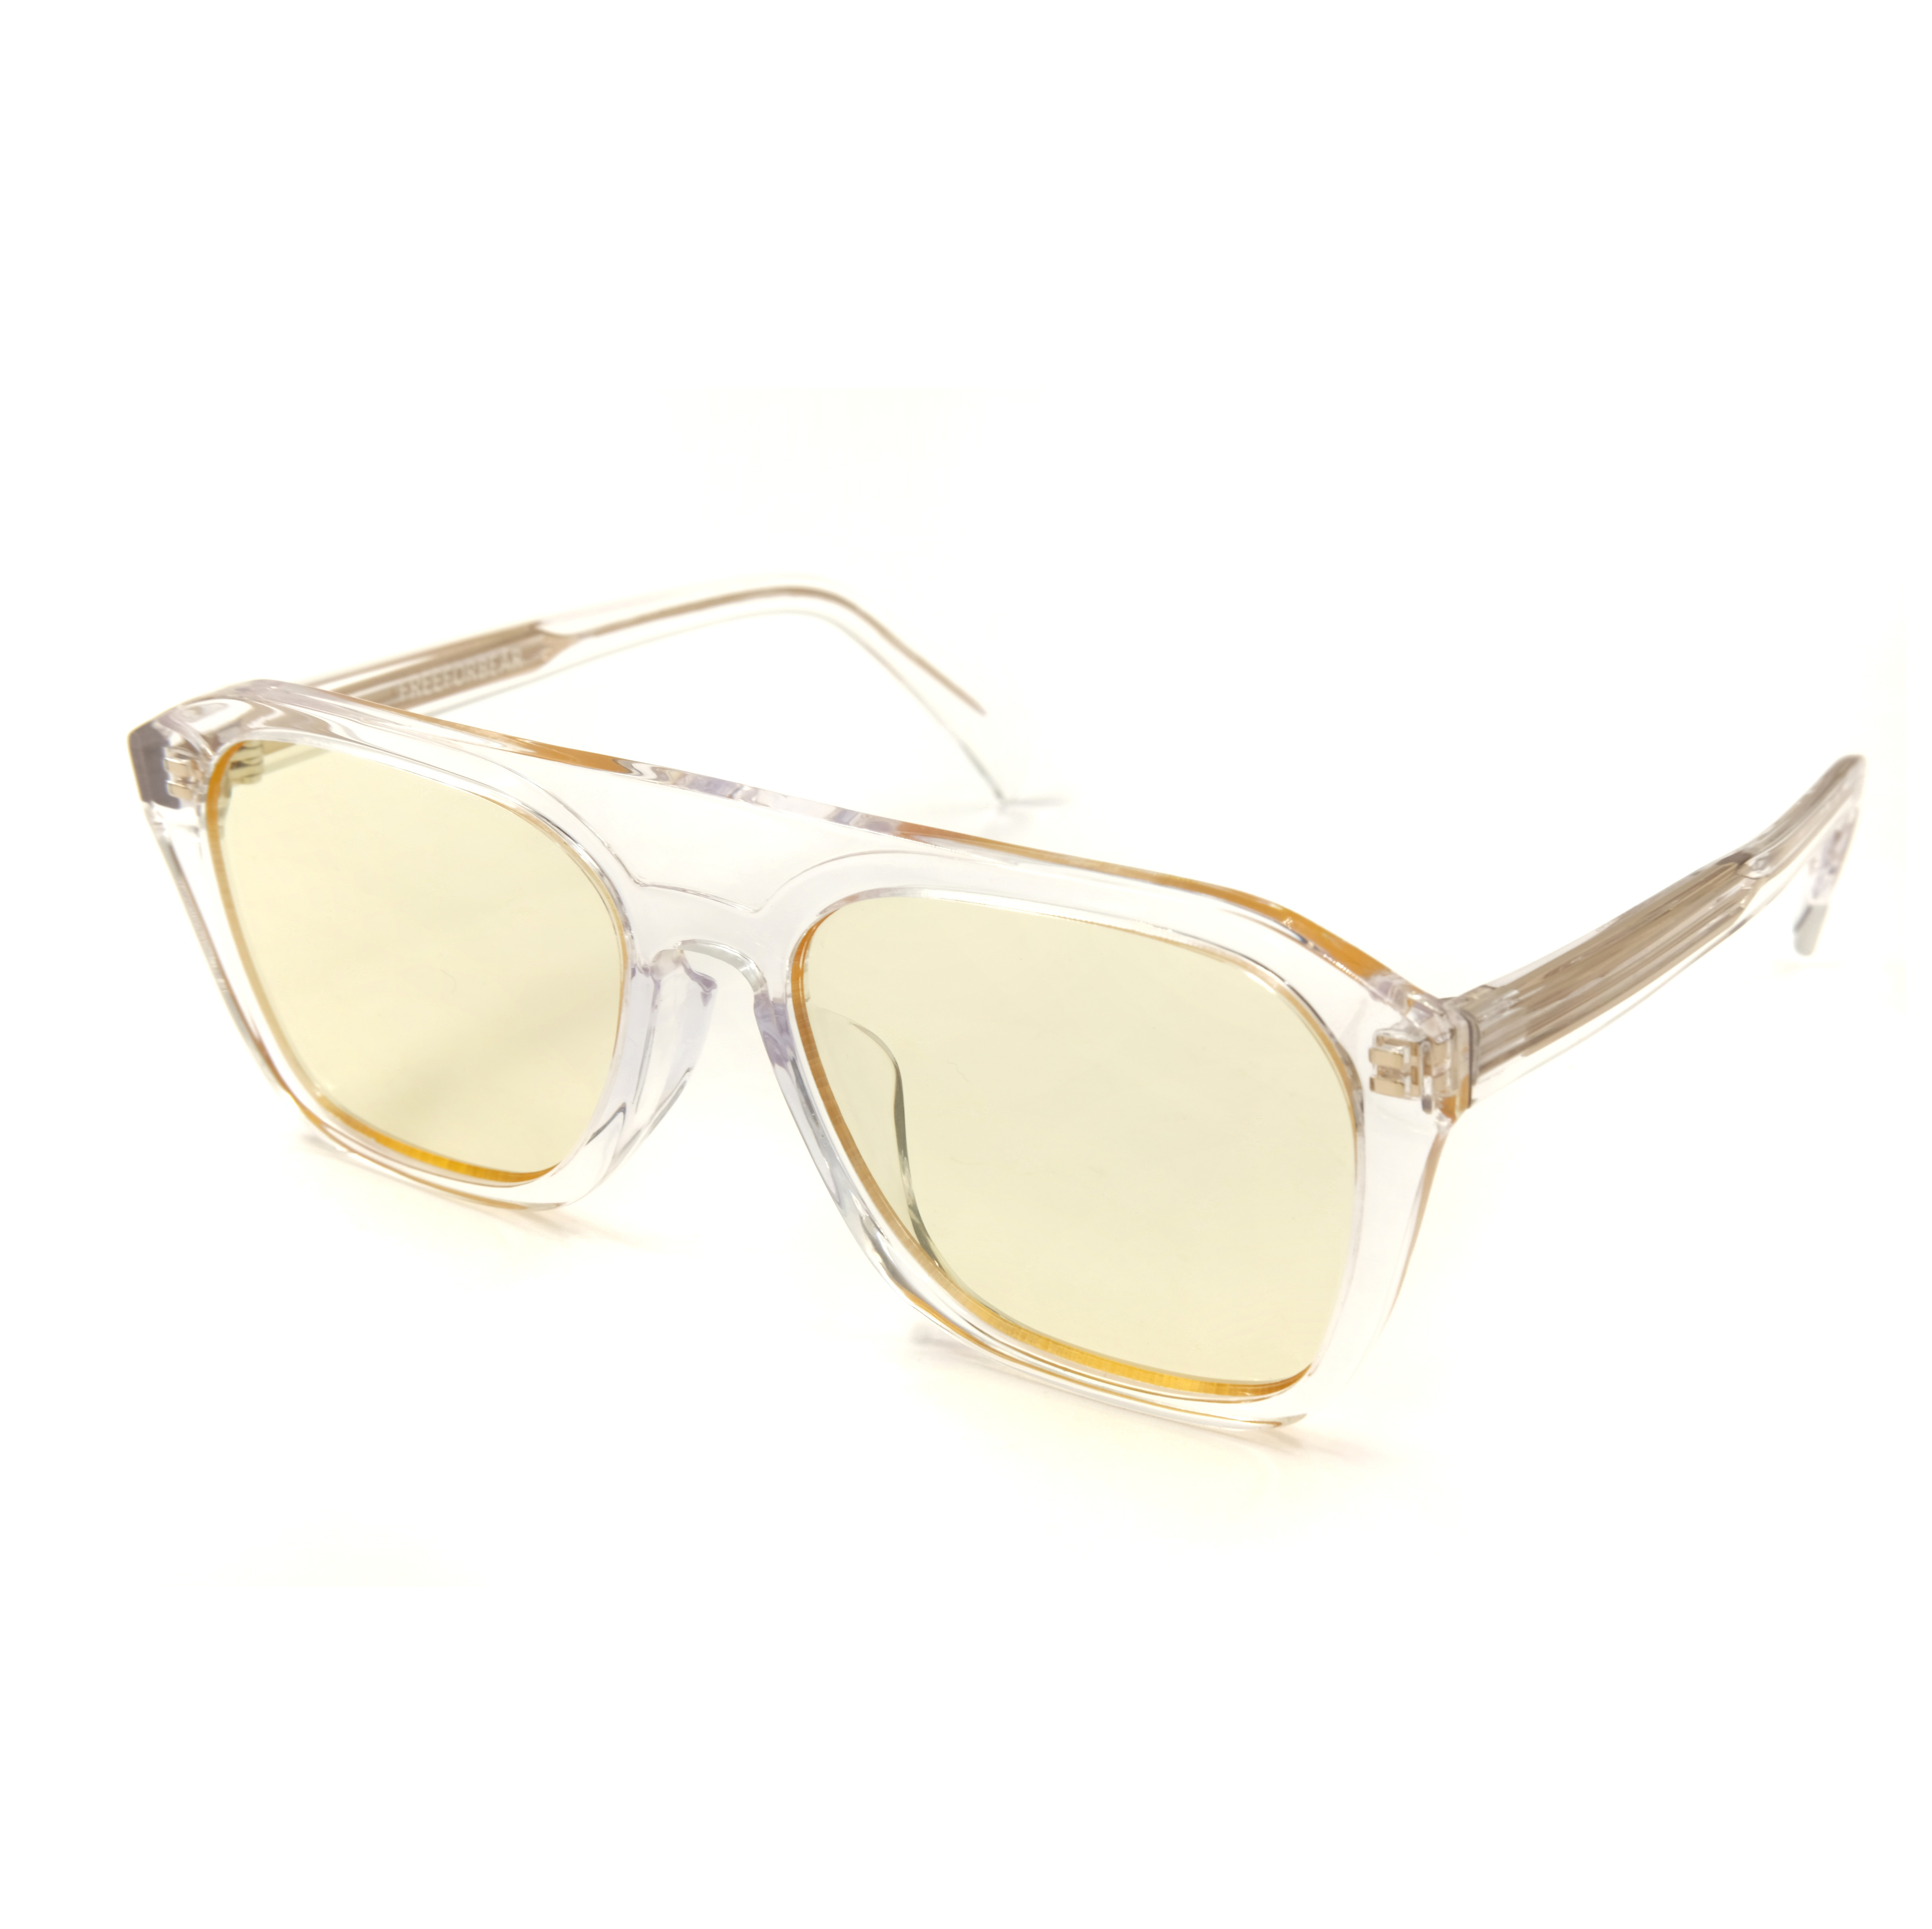 Gafas de sol con montura de acetato transparente con borde cuadrado Fabricantes de monturas de anteojos a medida